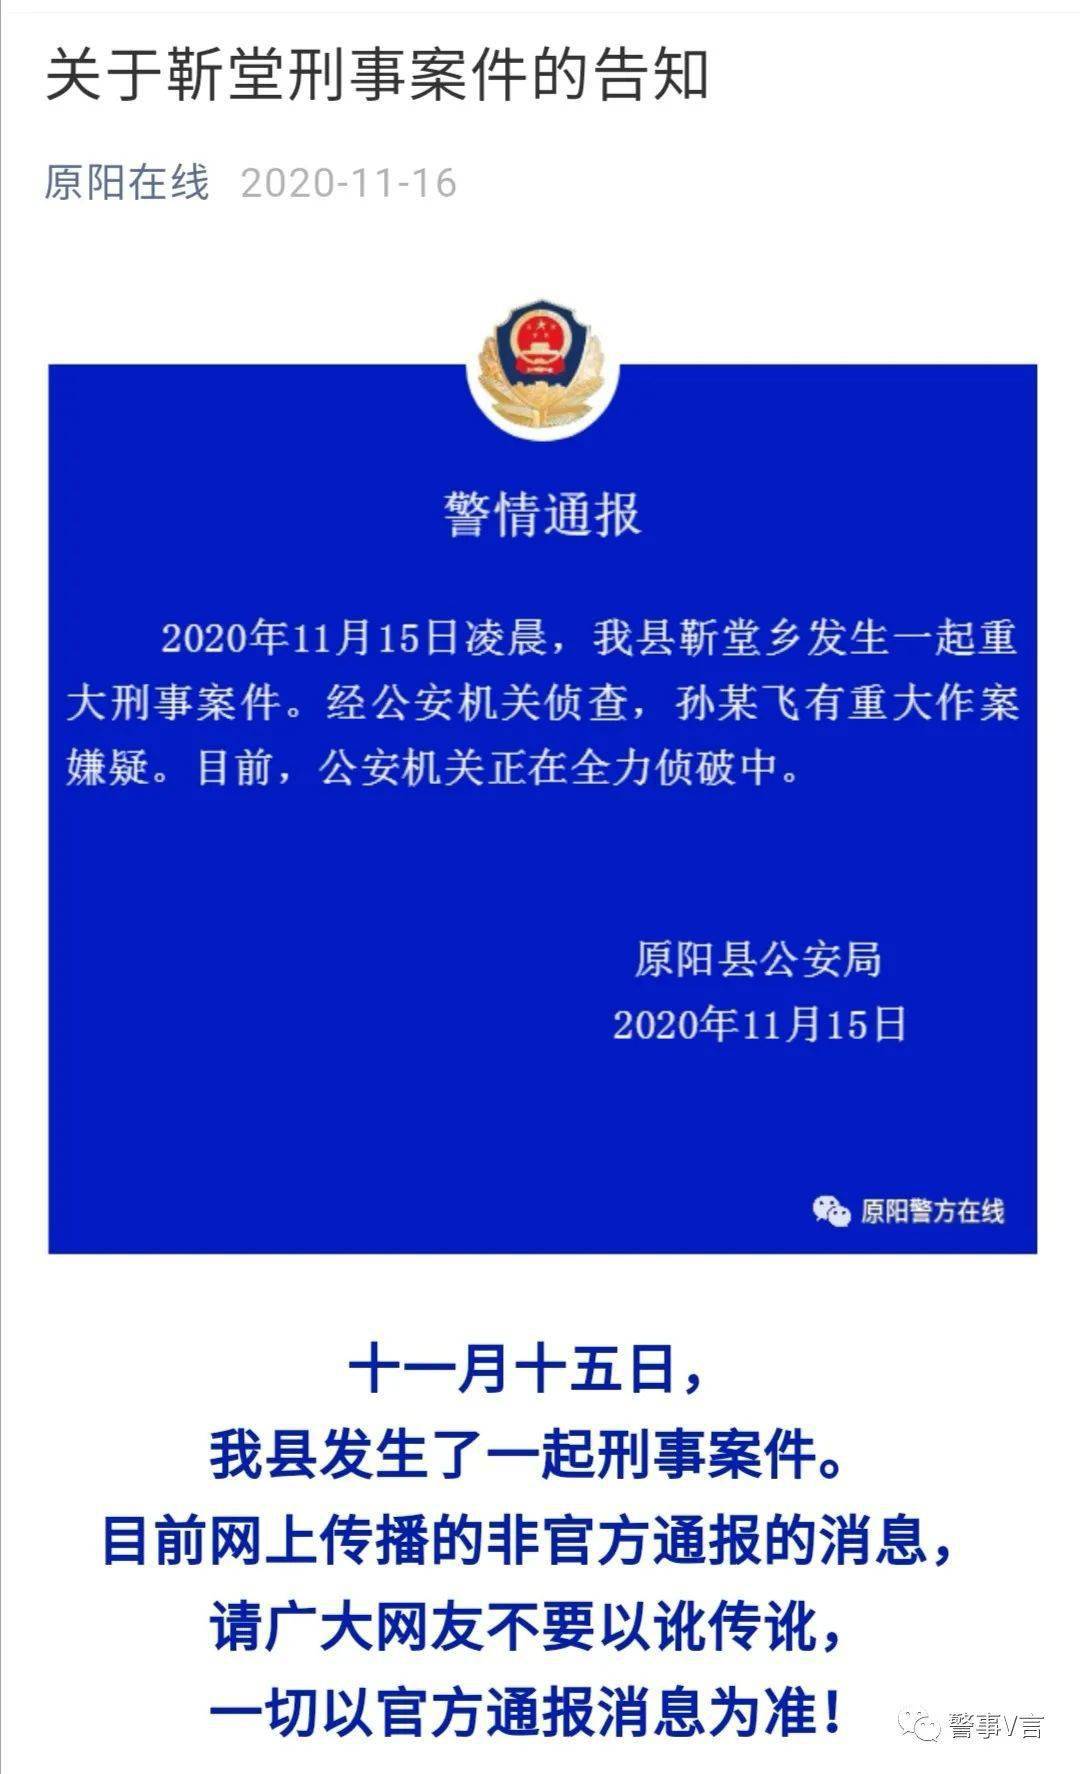 leyu乐鱼游戏官网：
盘货2020年十大反转新闻事件